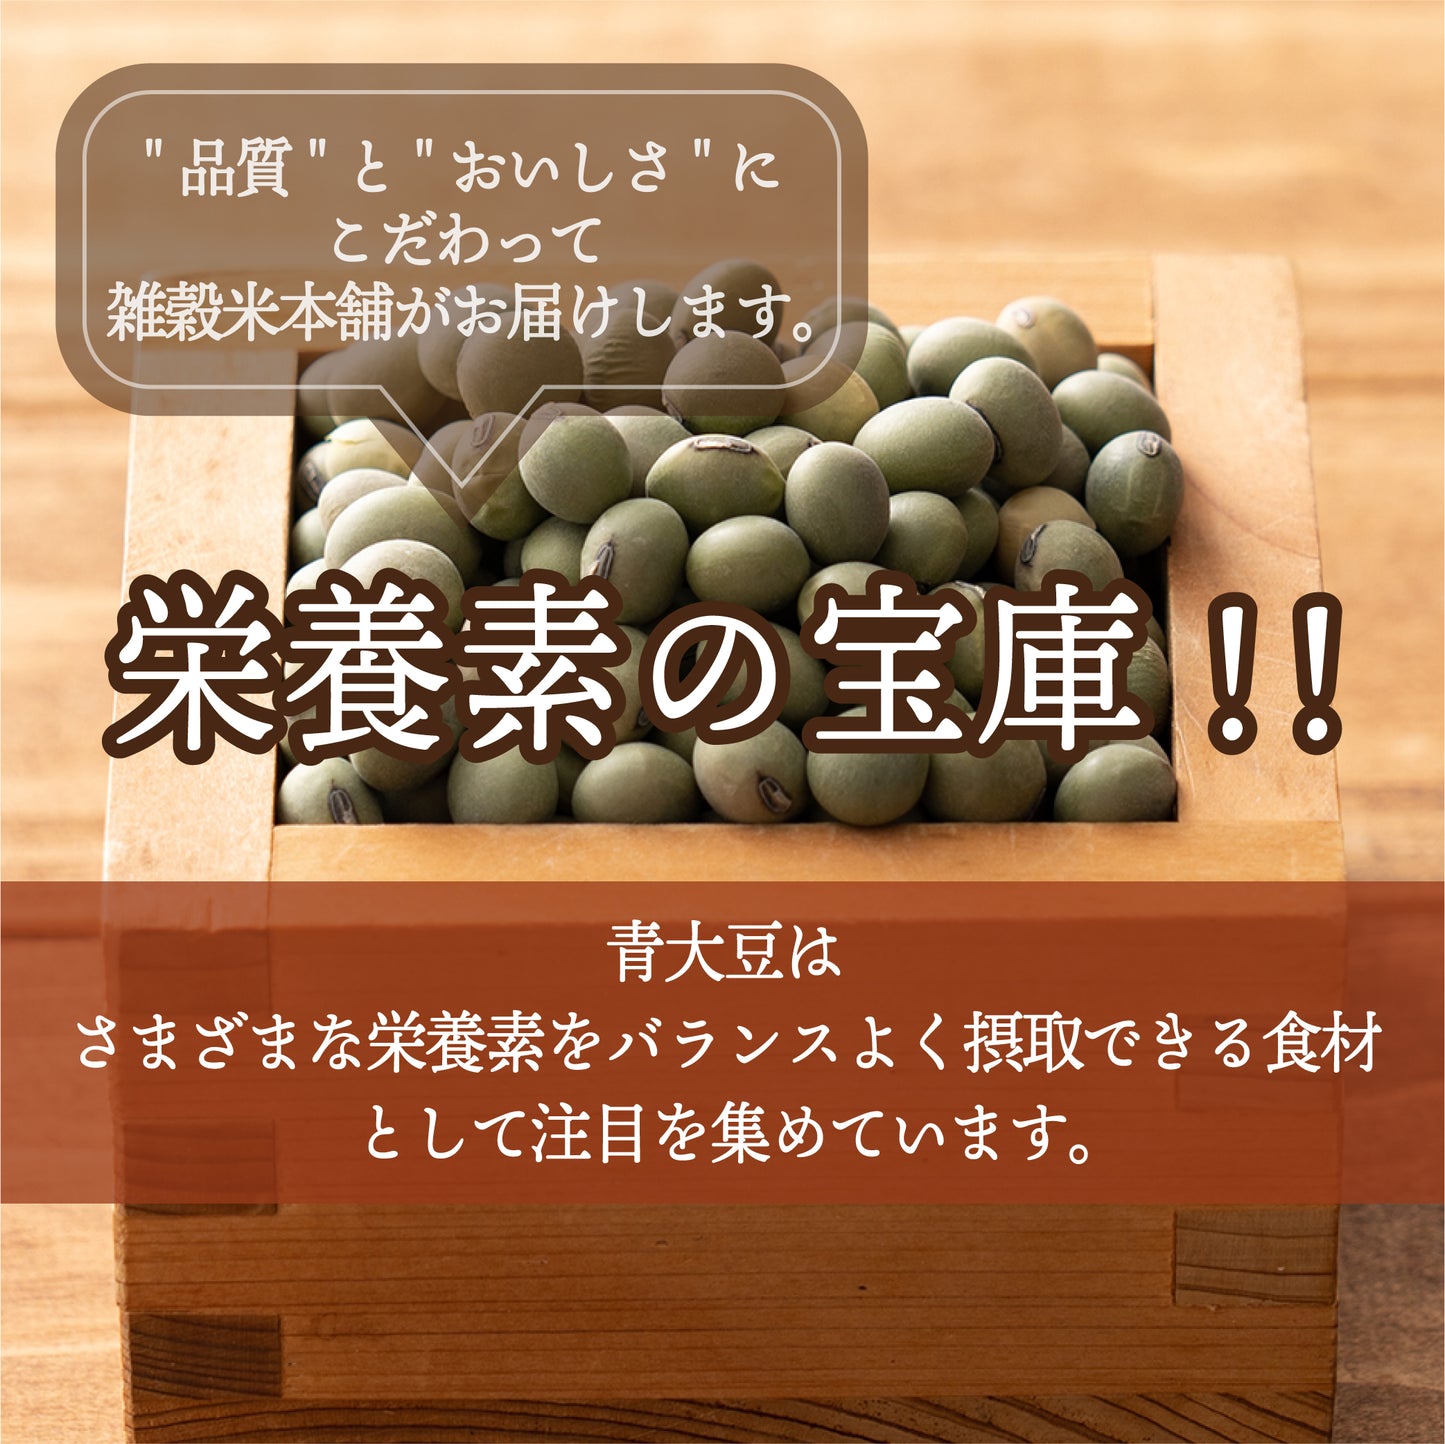 雑穀 雑穀米 国産 青大豆 9kg(450g×20袋)